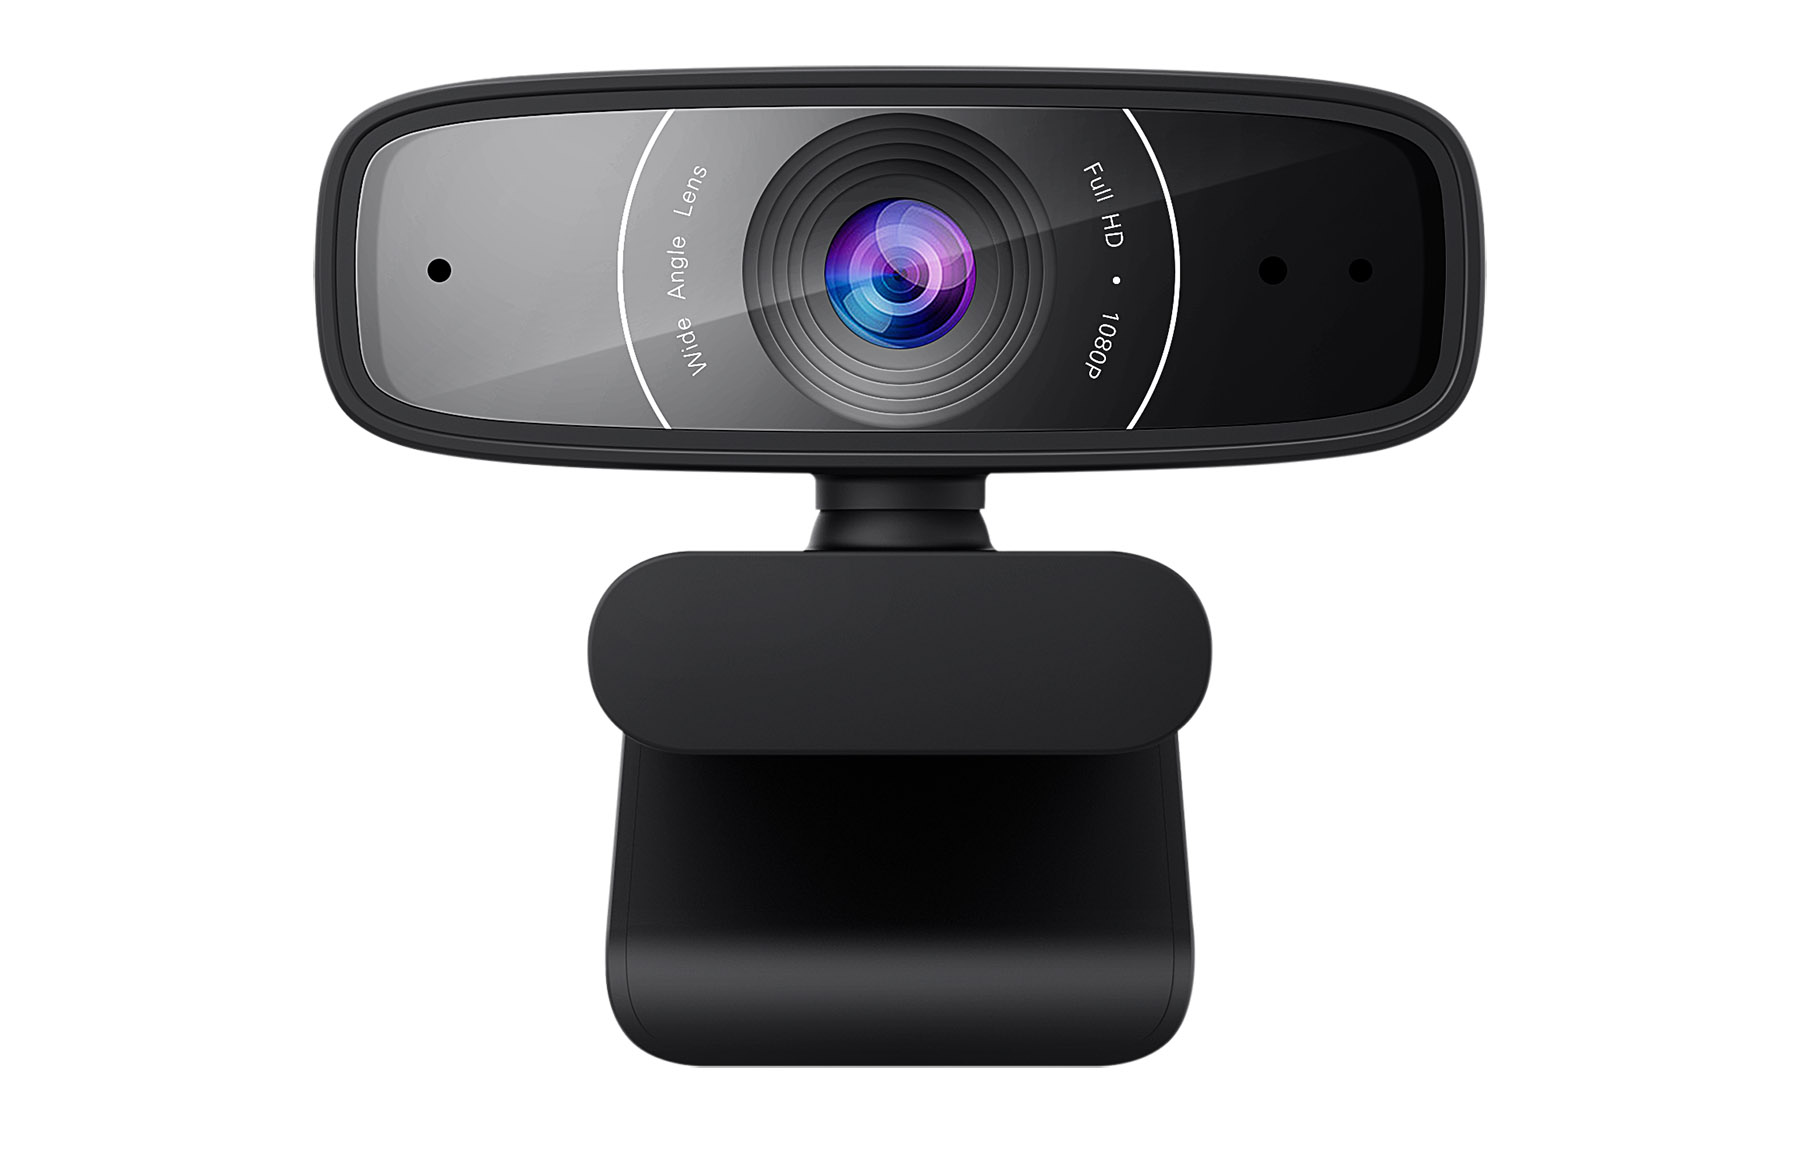 Webcam C3